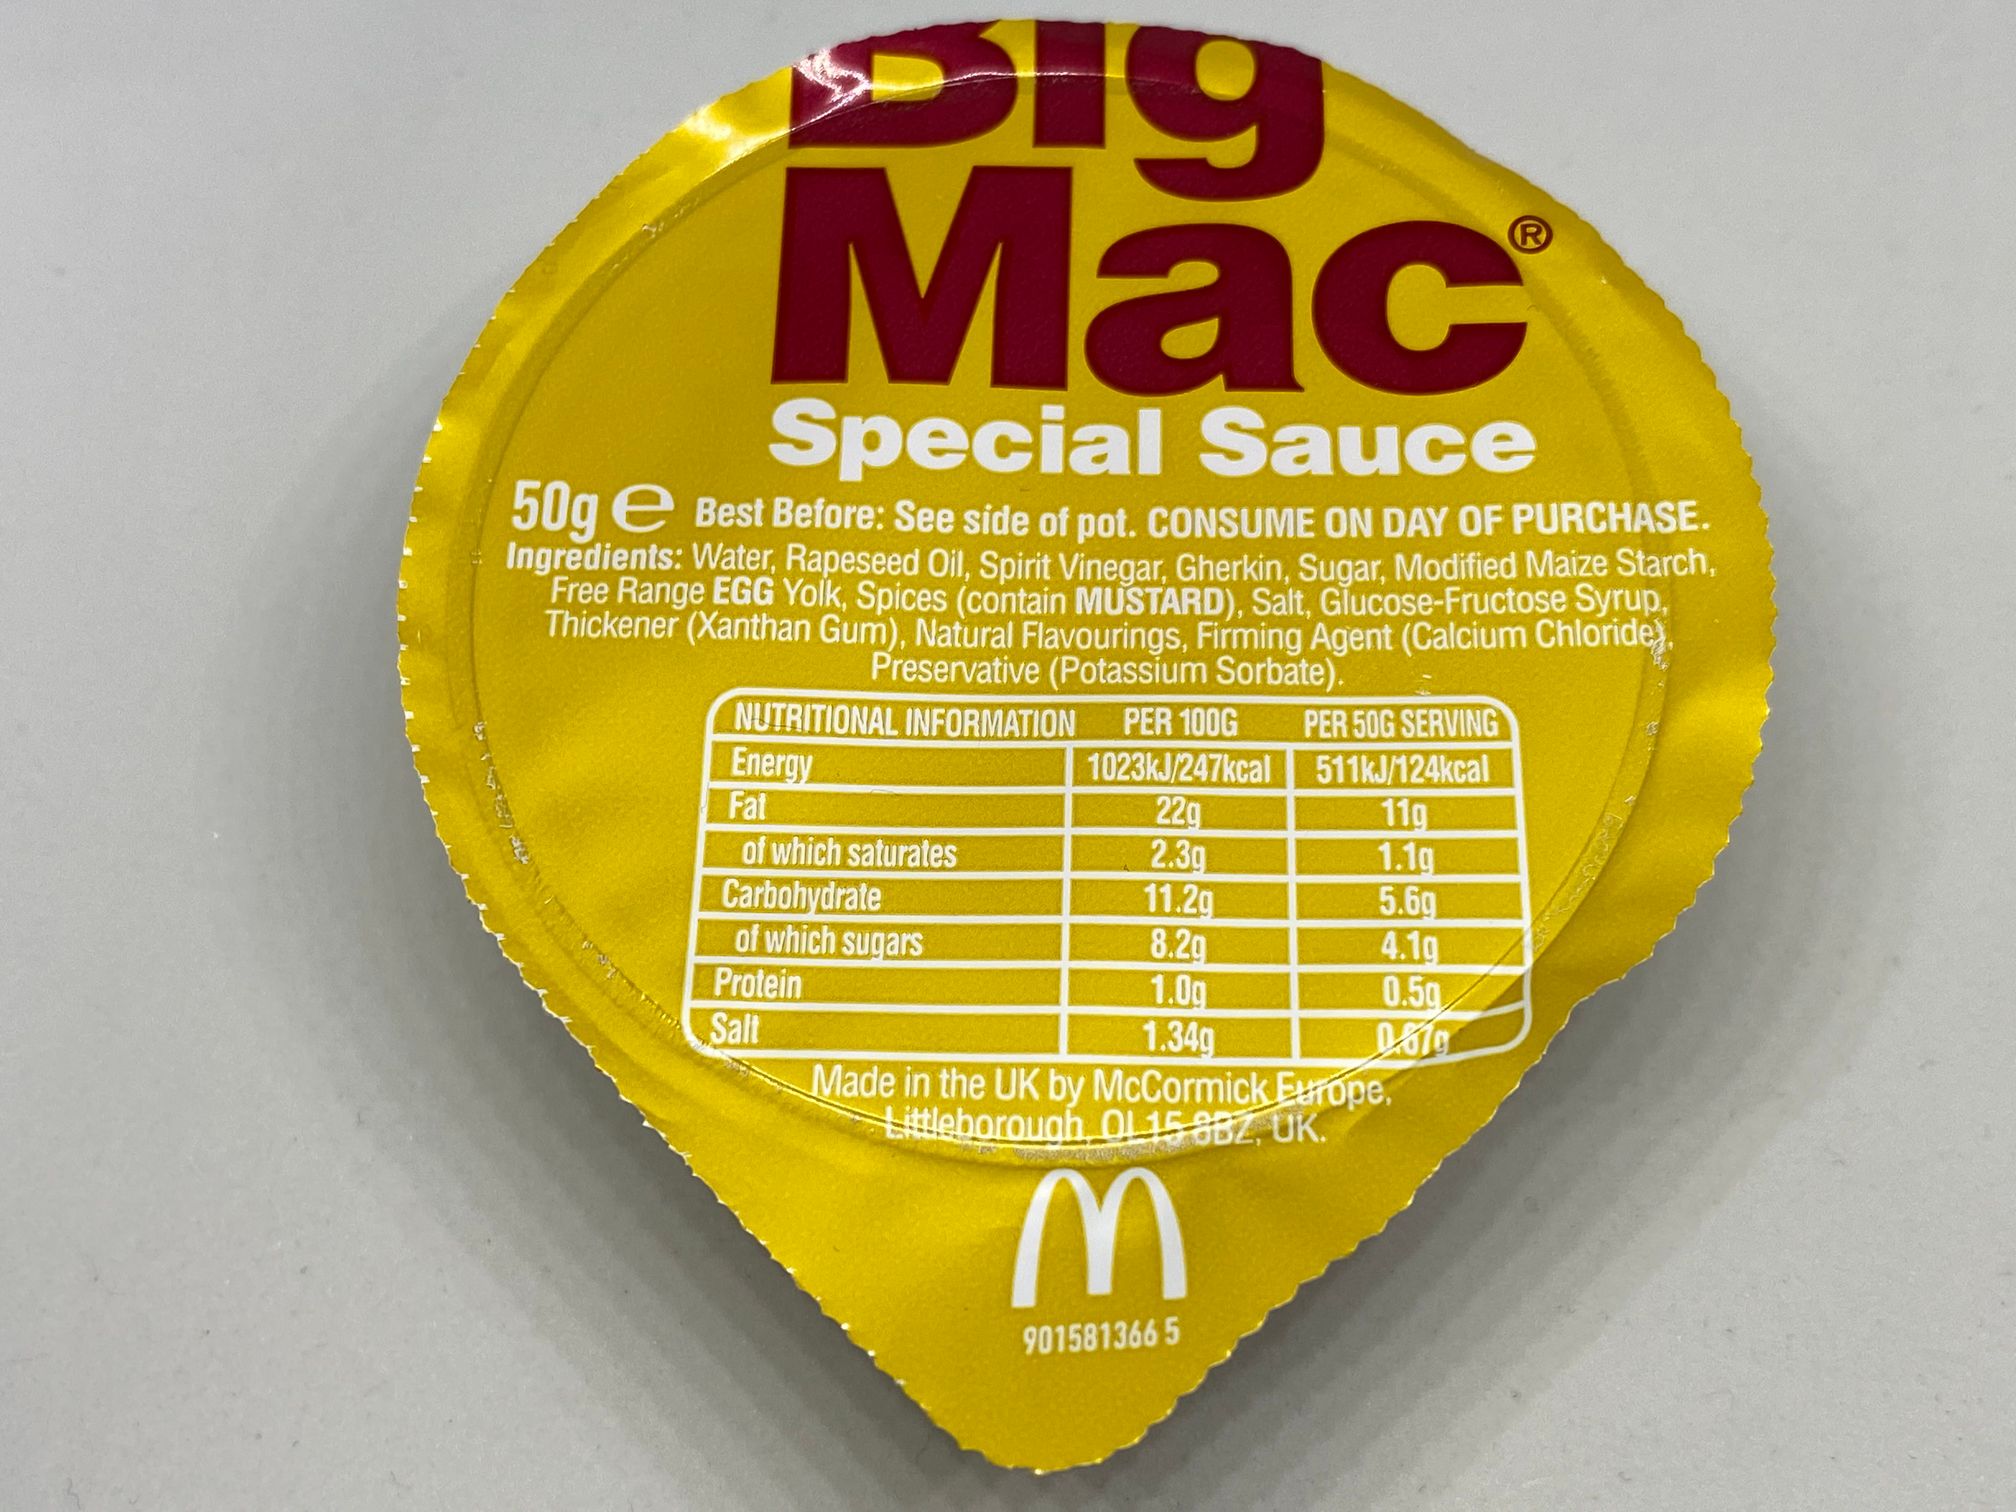 Big Mac Sauce